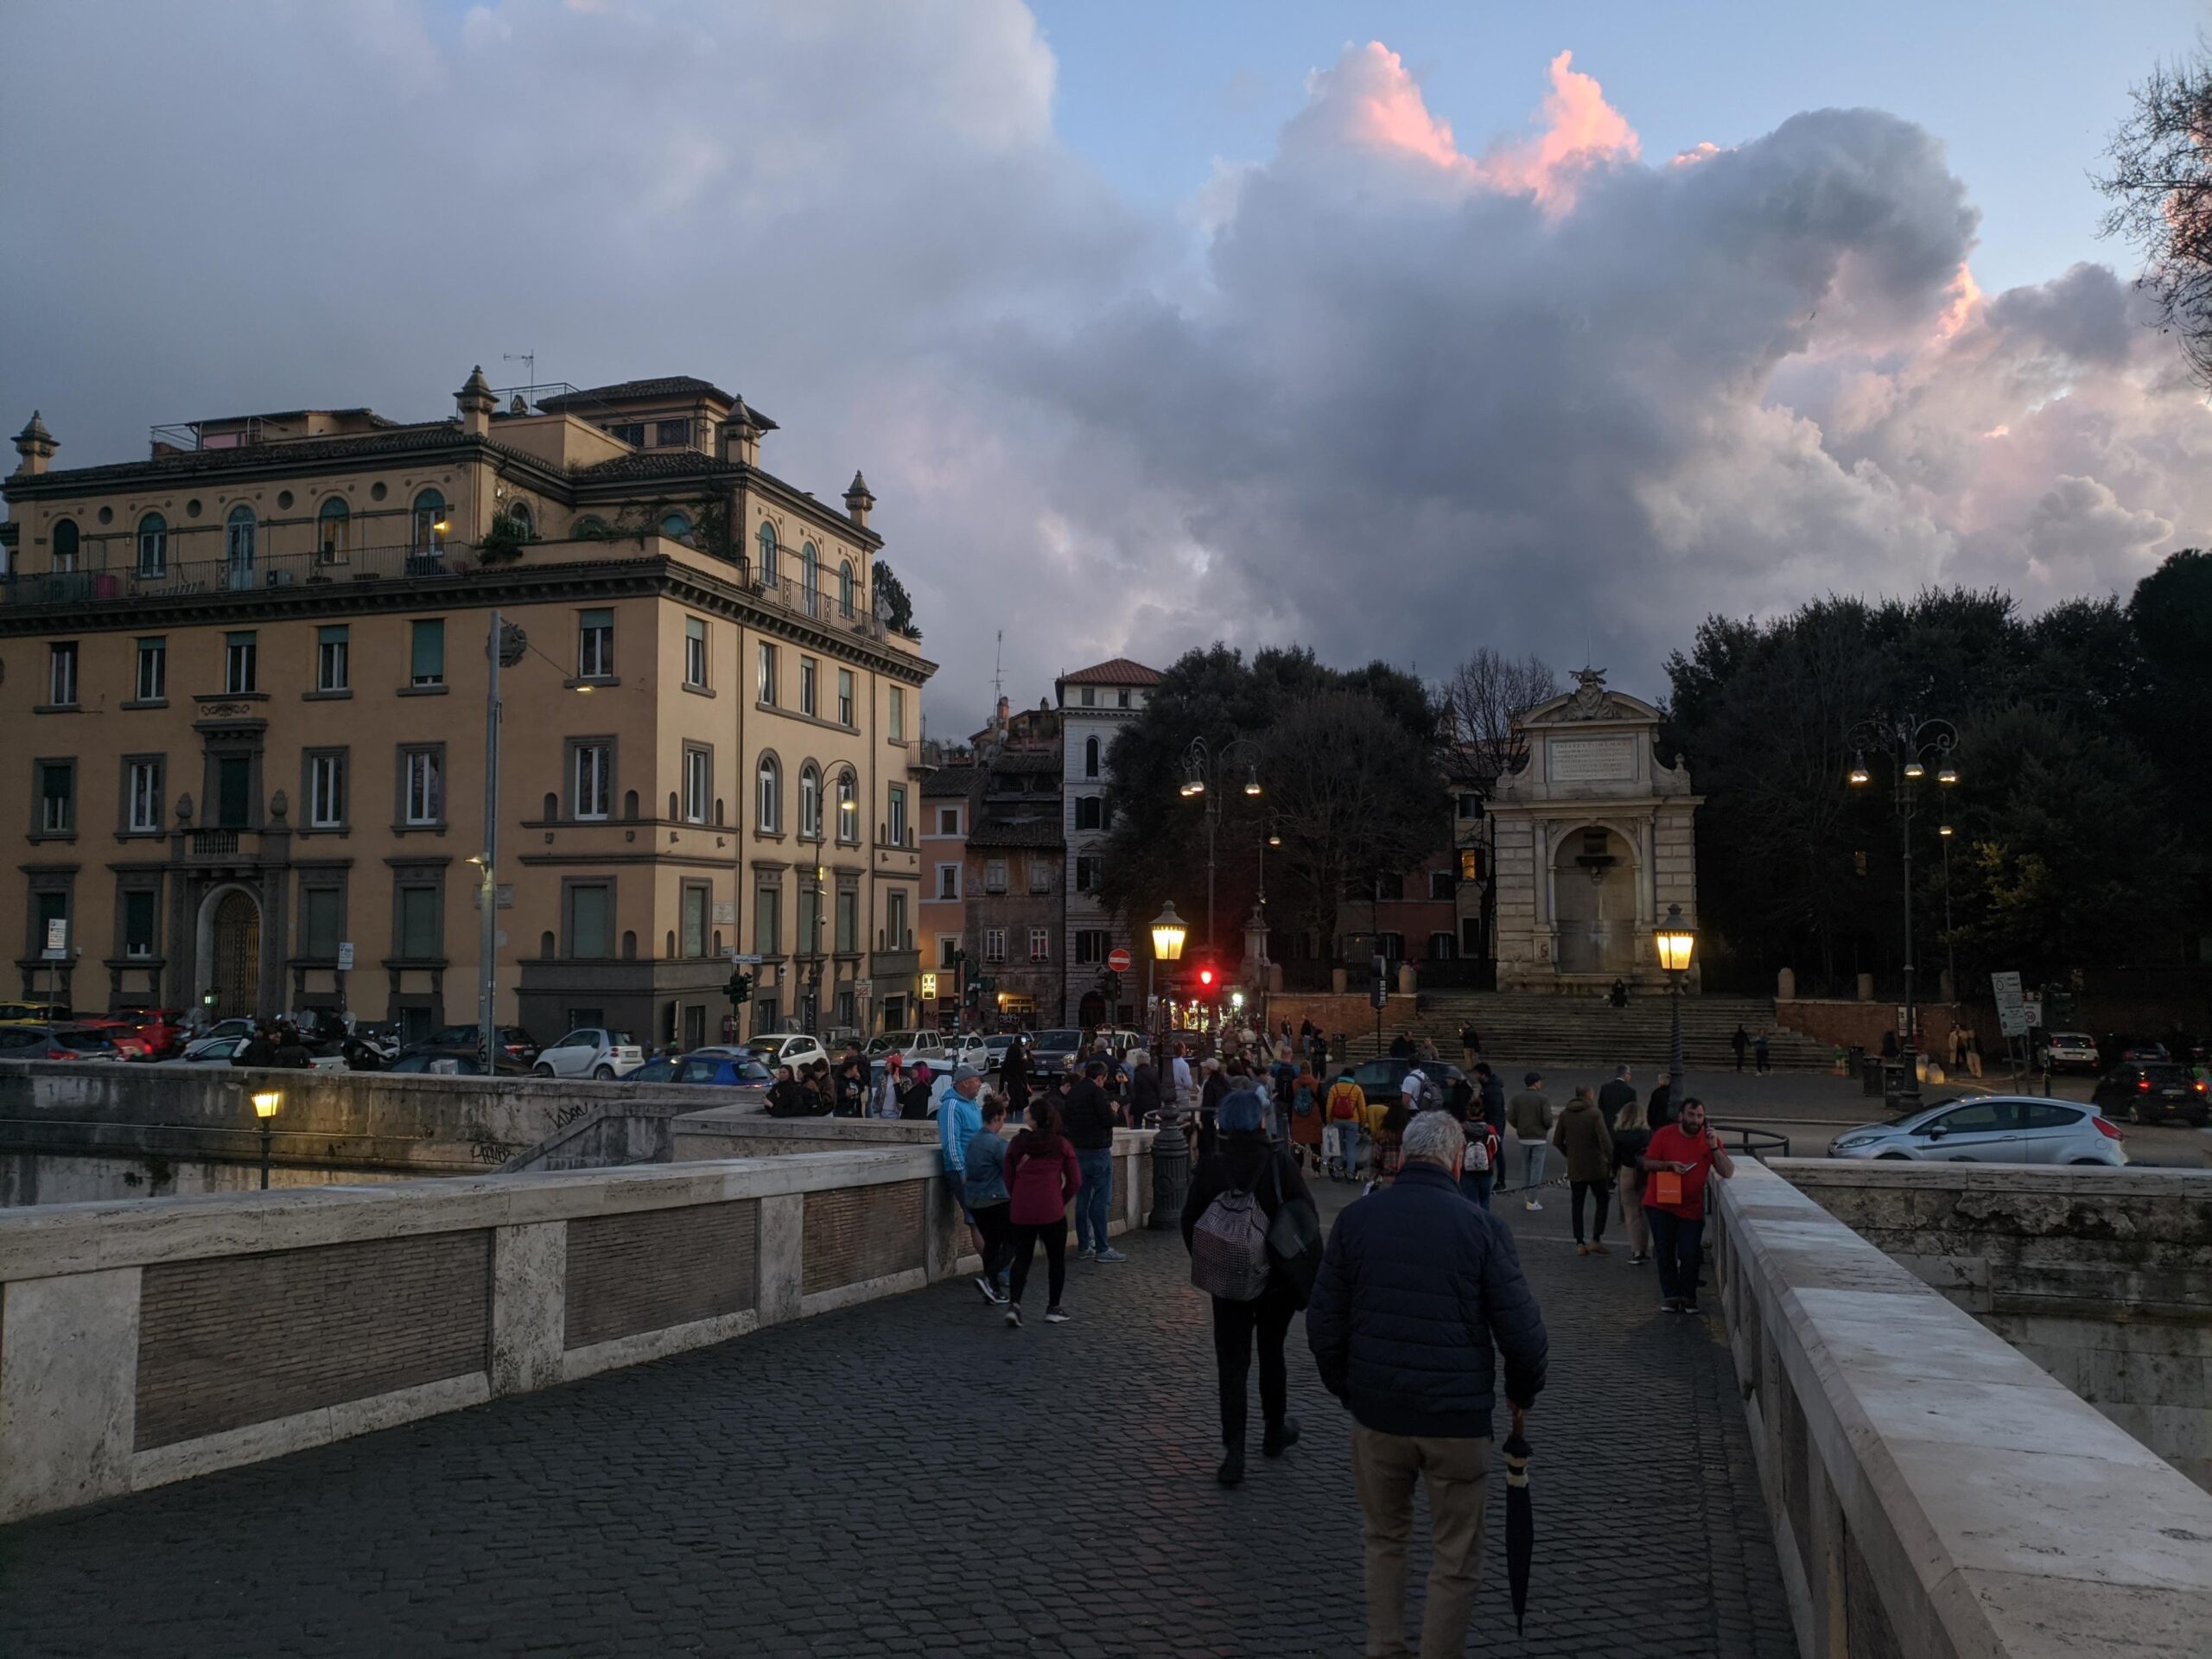 Vista do entardecer ao cruzar a Ponte Sisto em Roma, com pedestres caminhando, o céu dramático ao fundo com nuvens iluminadas pelo sol poente, e a arquitetura histórica emoldurando a cena